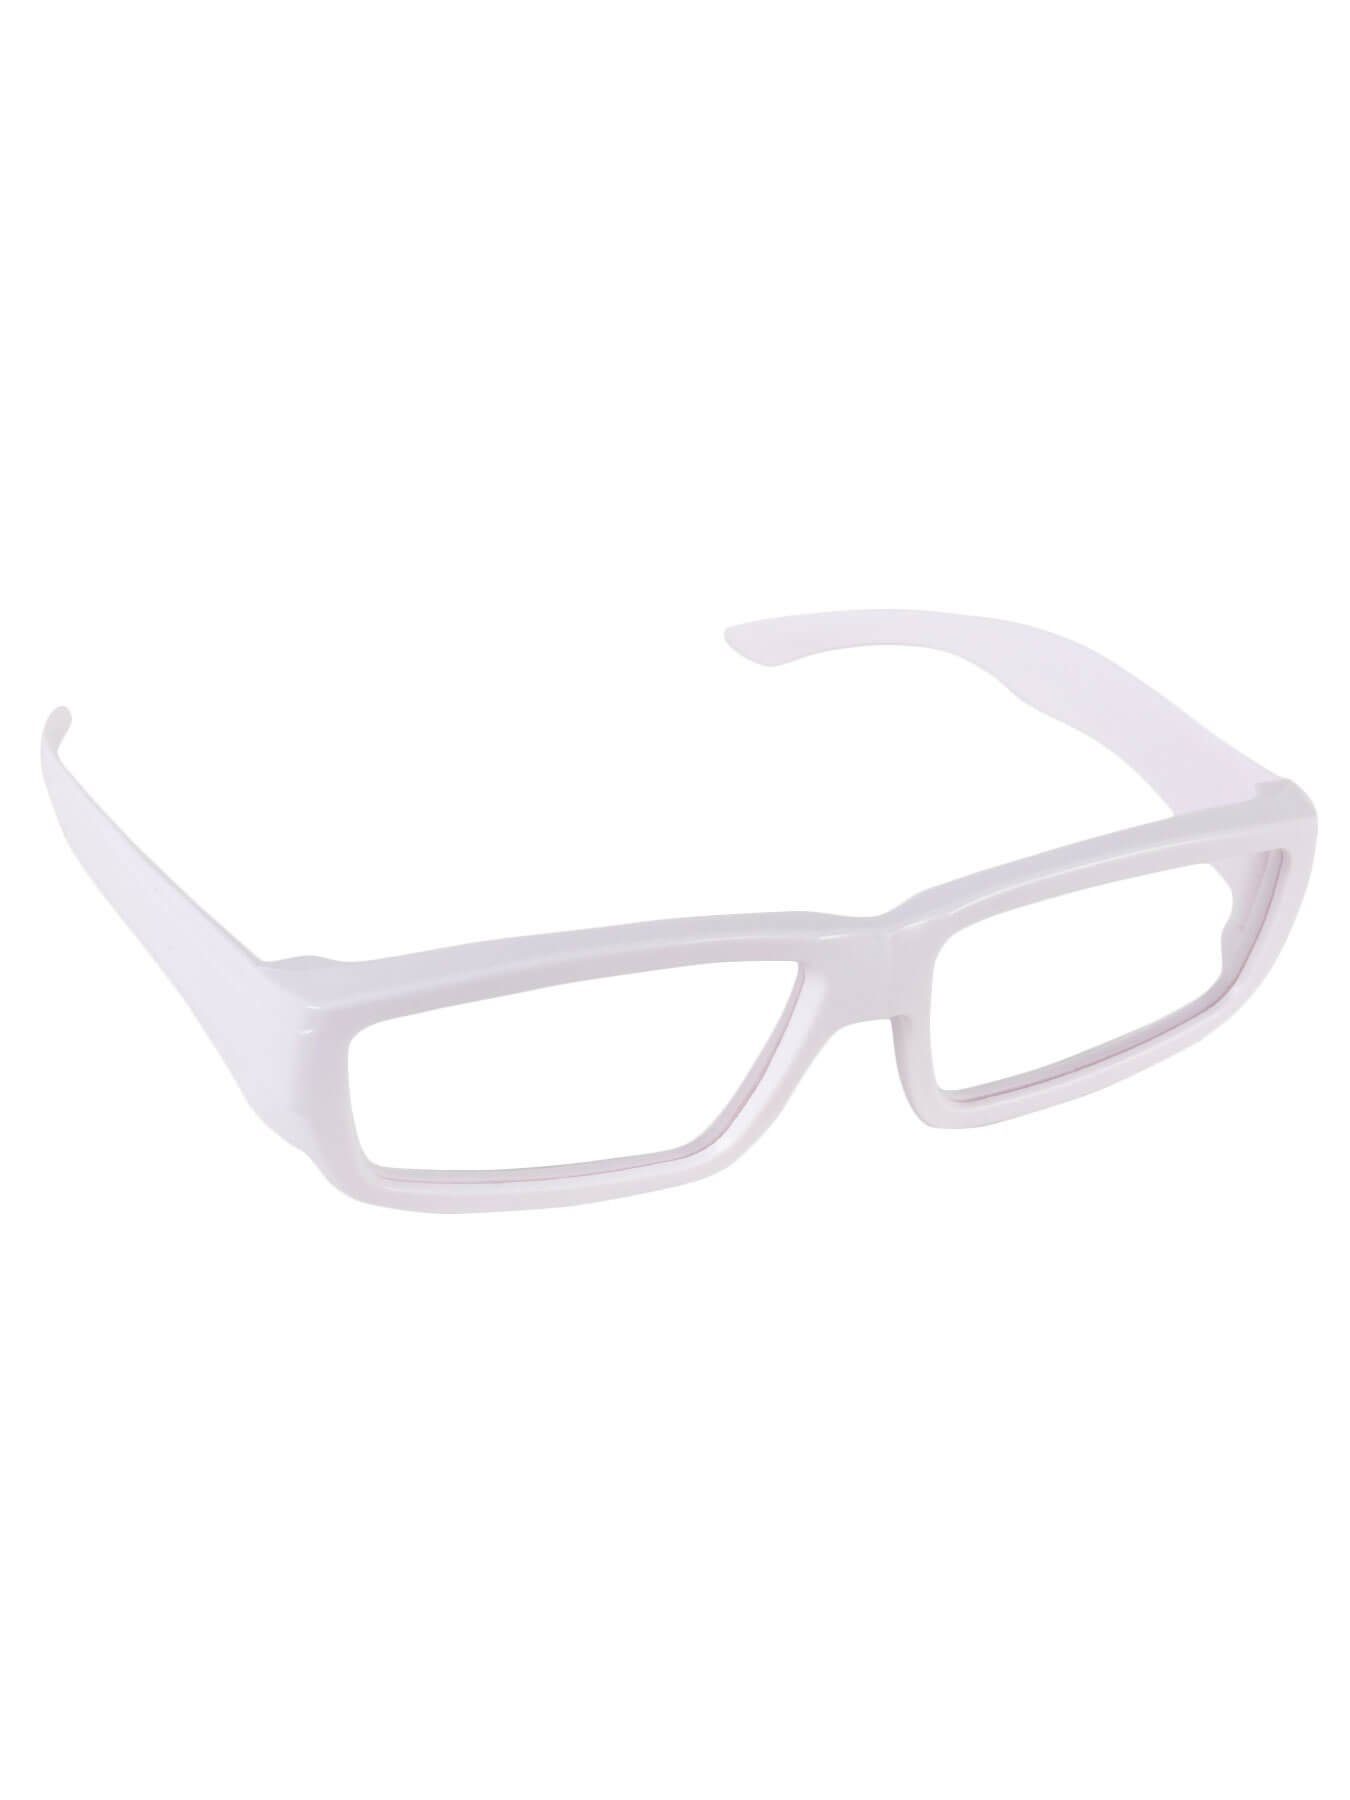 PSYWORK 3D-Brille Schwarzlicht Weiß ChromaDepth Eckig 3D-Brille